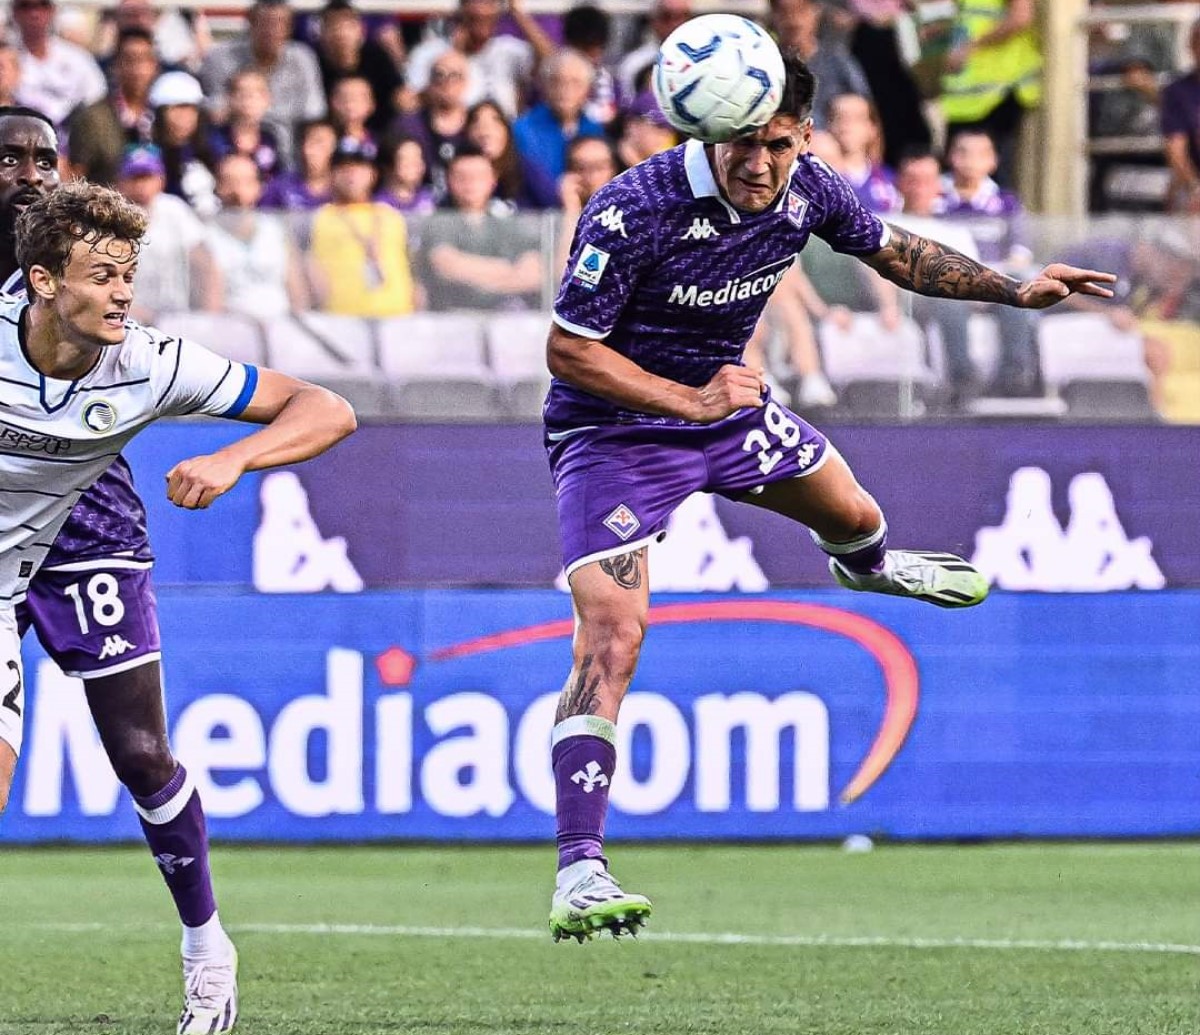 Fiorentina-Atalanta (3-2): analisi tattica e considerazioni